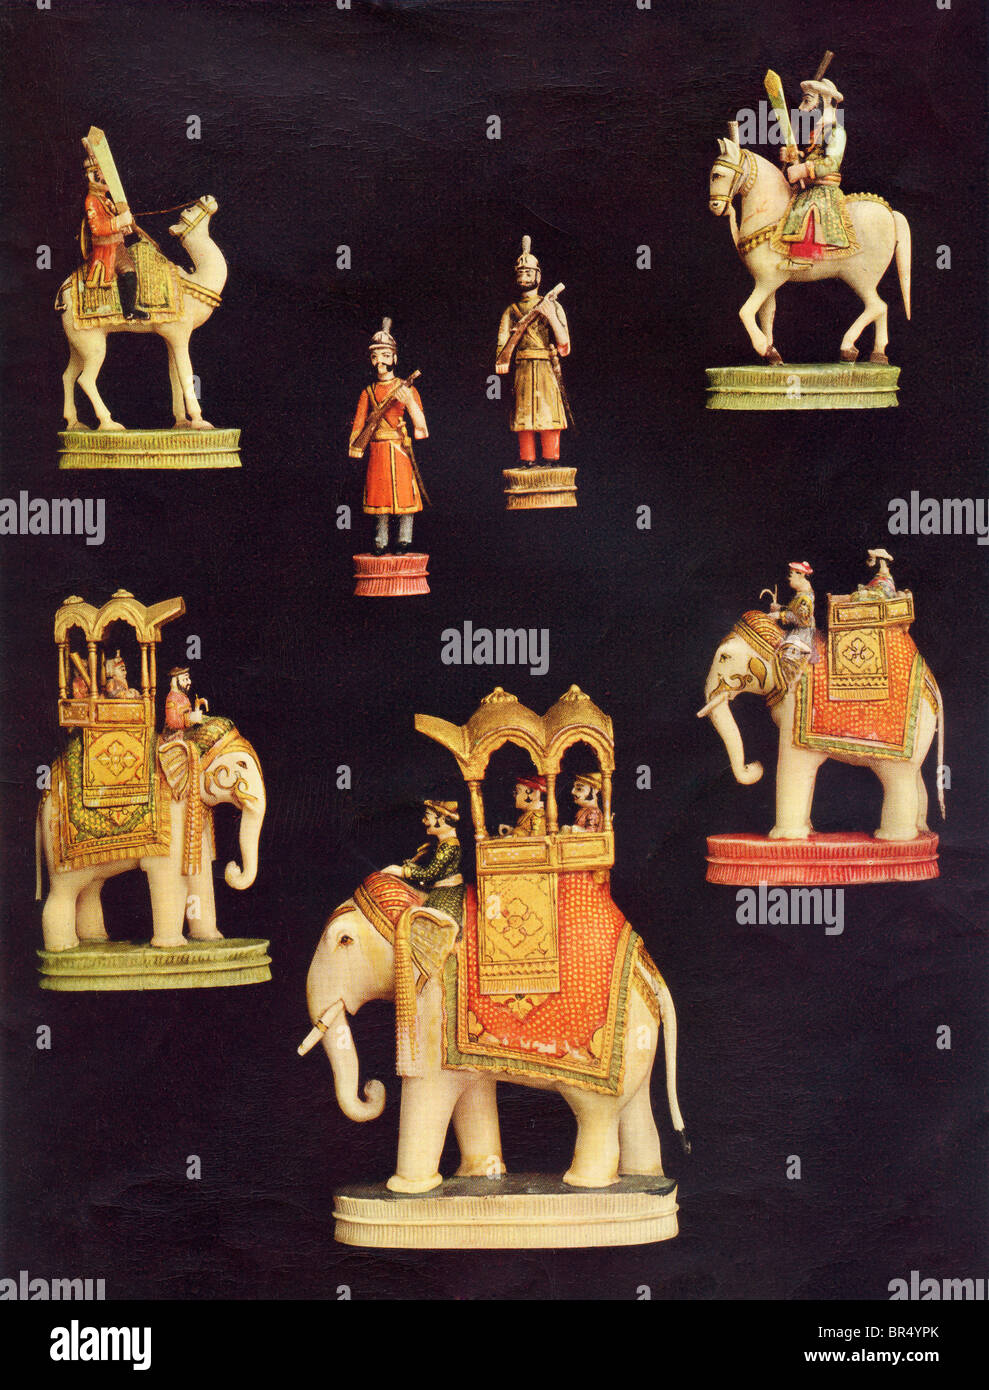 Stücke aus einem kompletten Schach in geschnitzten und farbig Elfenbein. Made in Delhi, Indien c.1790 für die Begum Samru. Stockfoto